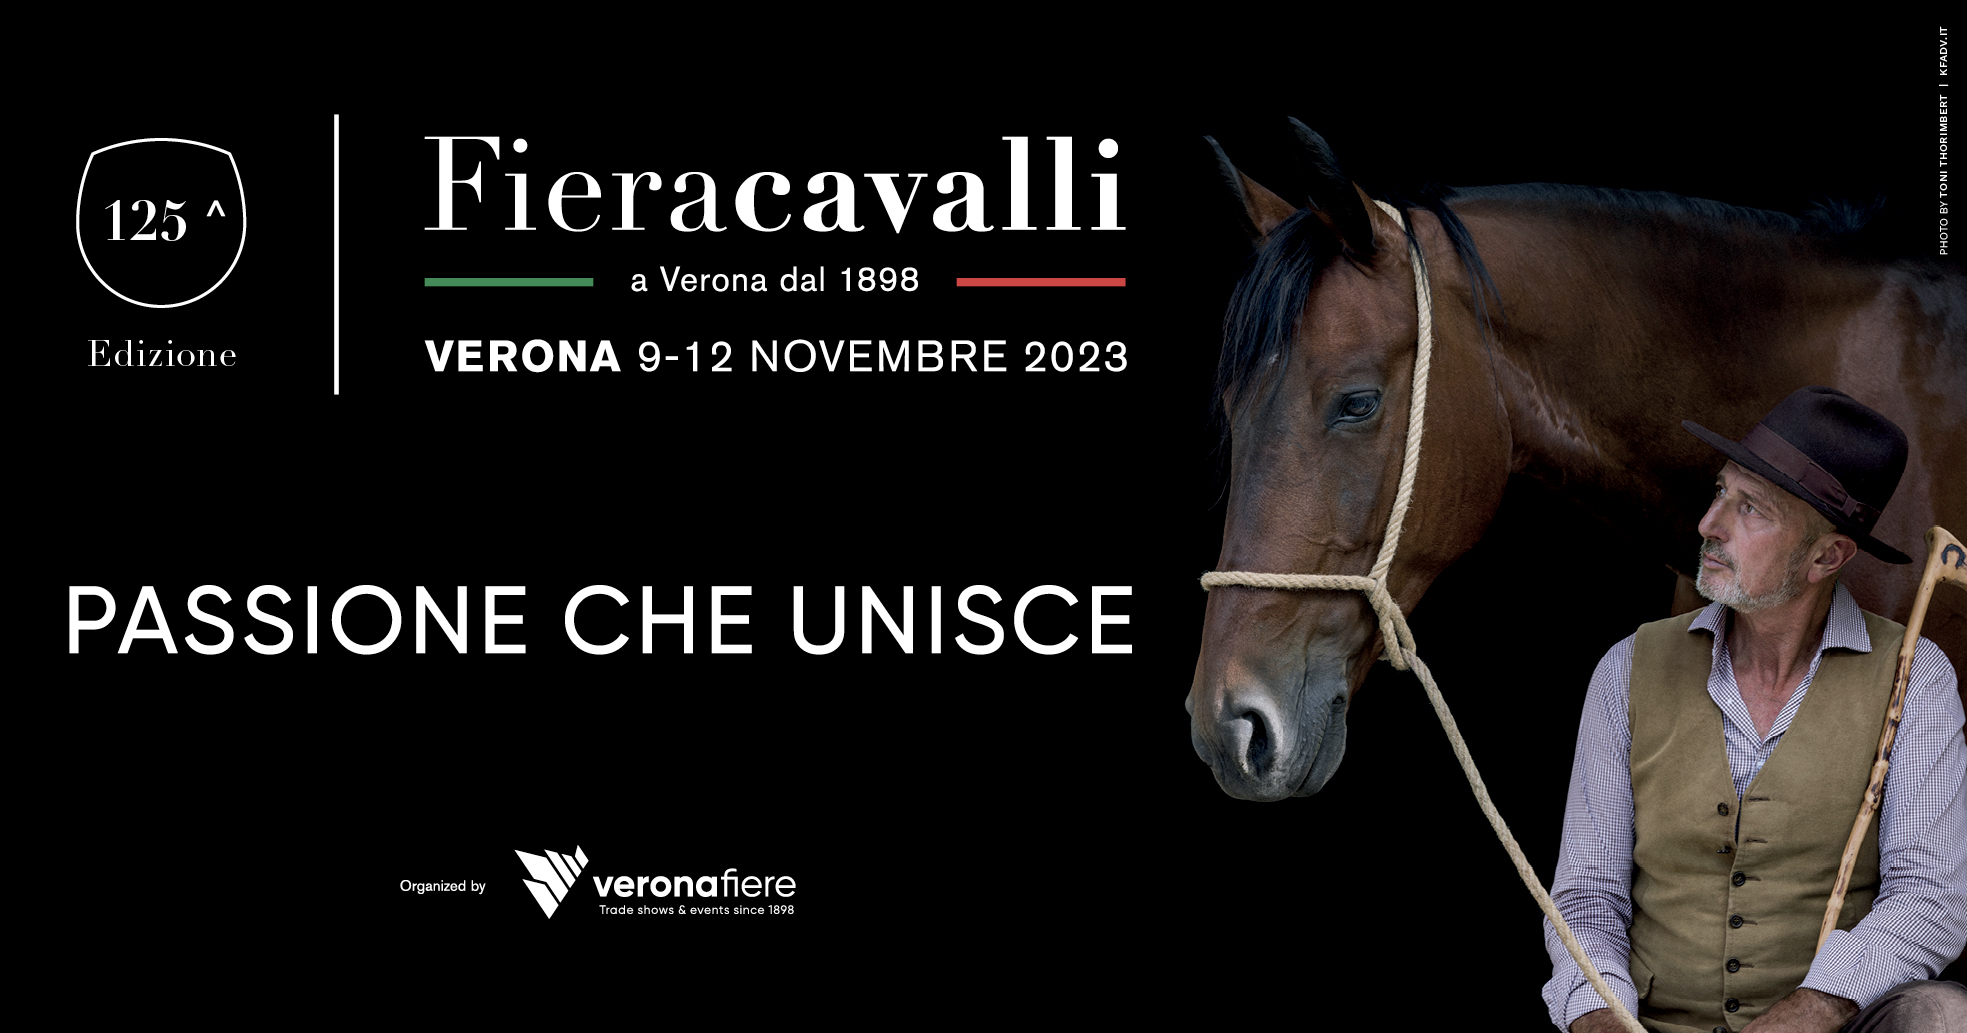 Fieracavalli - Verona 2023